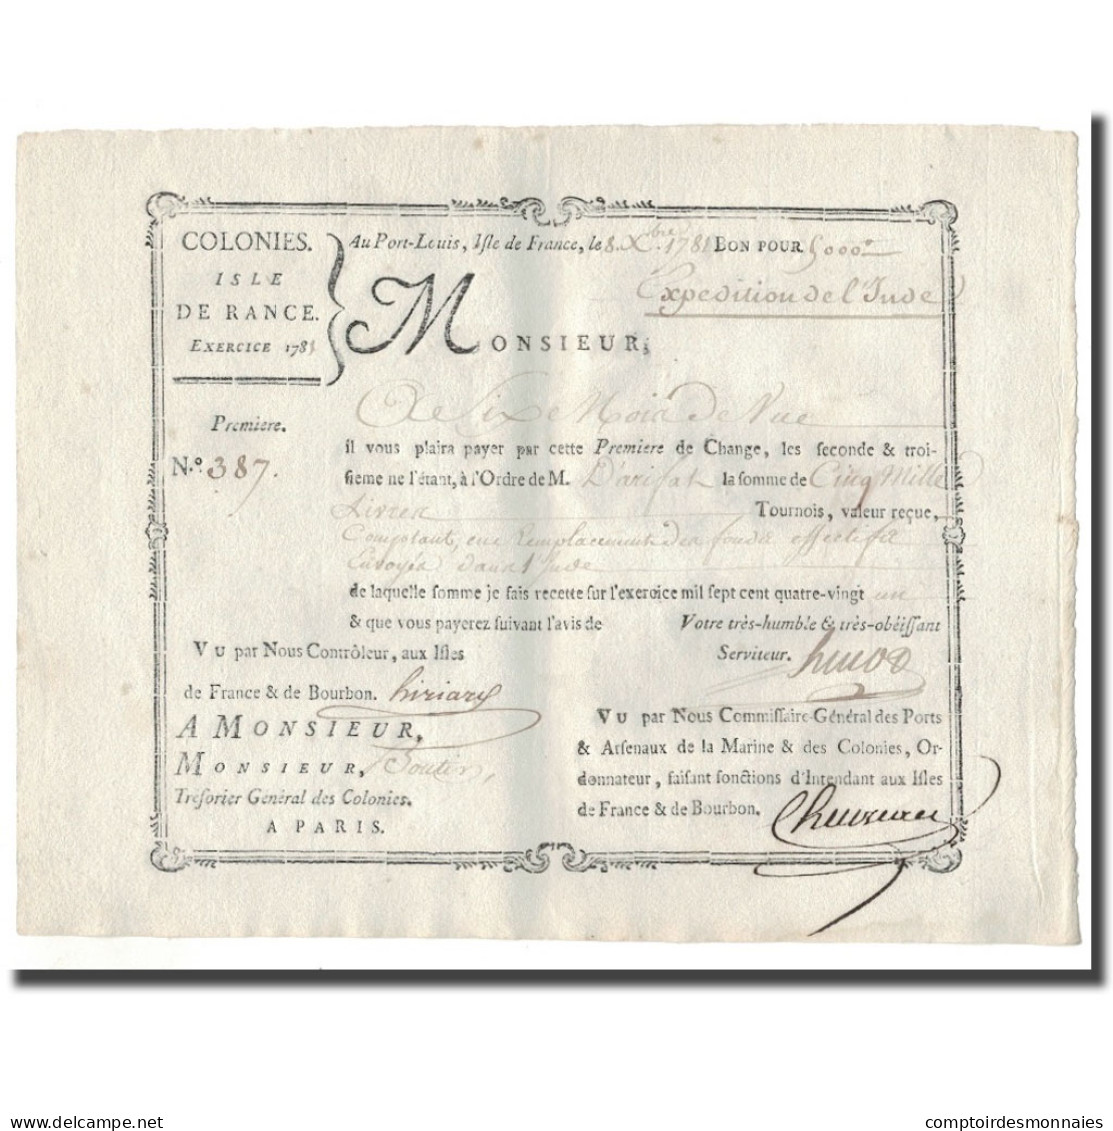 France, Traite, Colonies, Isle De France, 5000 Livres, Expédition De L'Inde - ...-1889 Anciens Francs Circulés Au XIXème